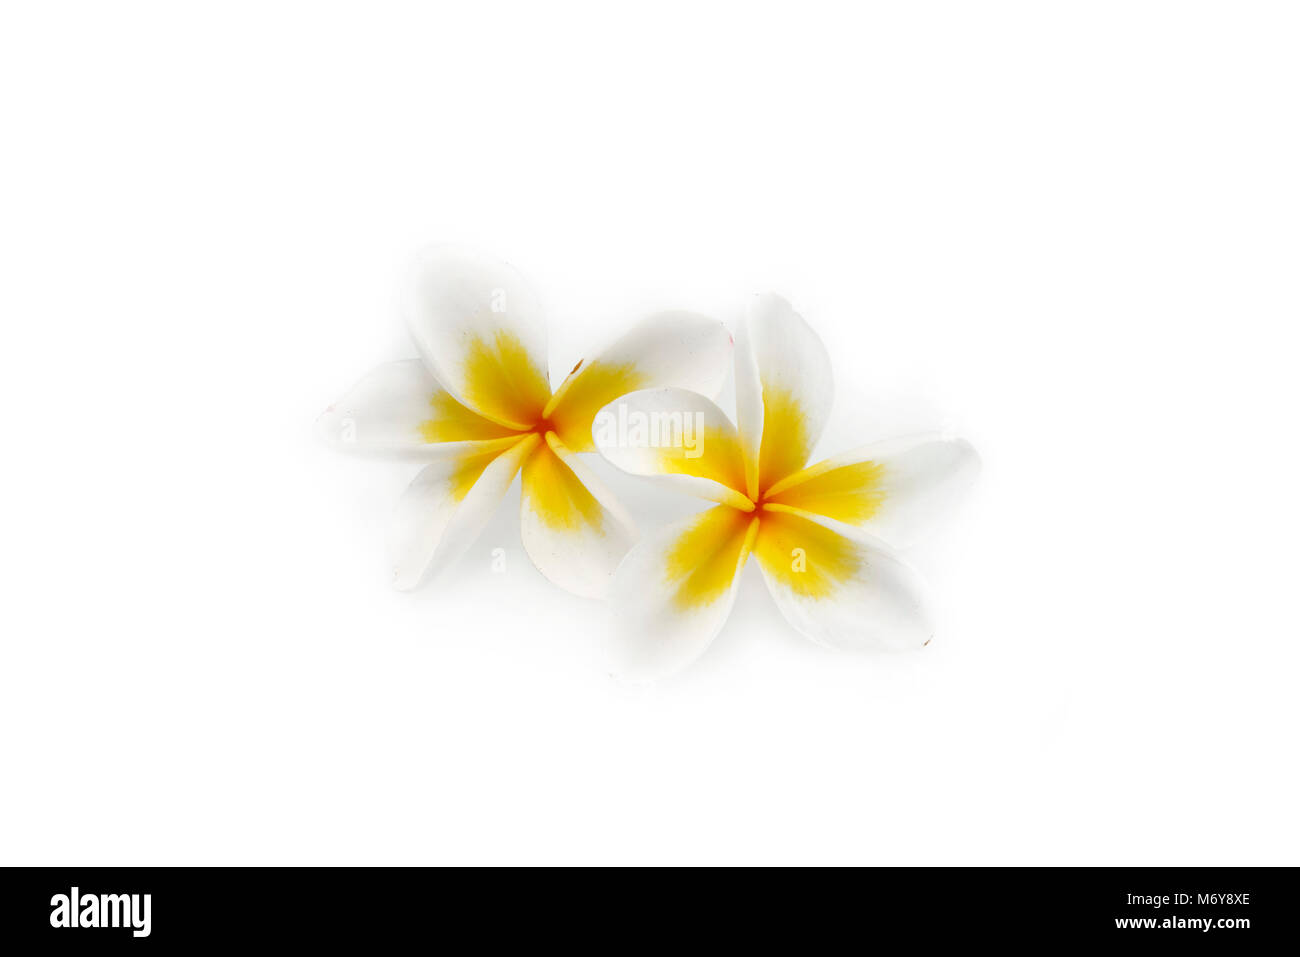 Flower Plumeria on white background Stock Photo